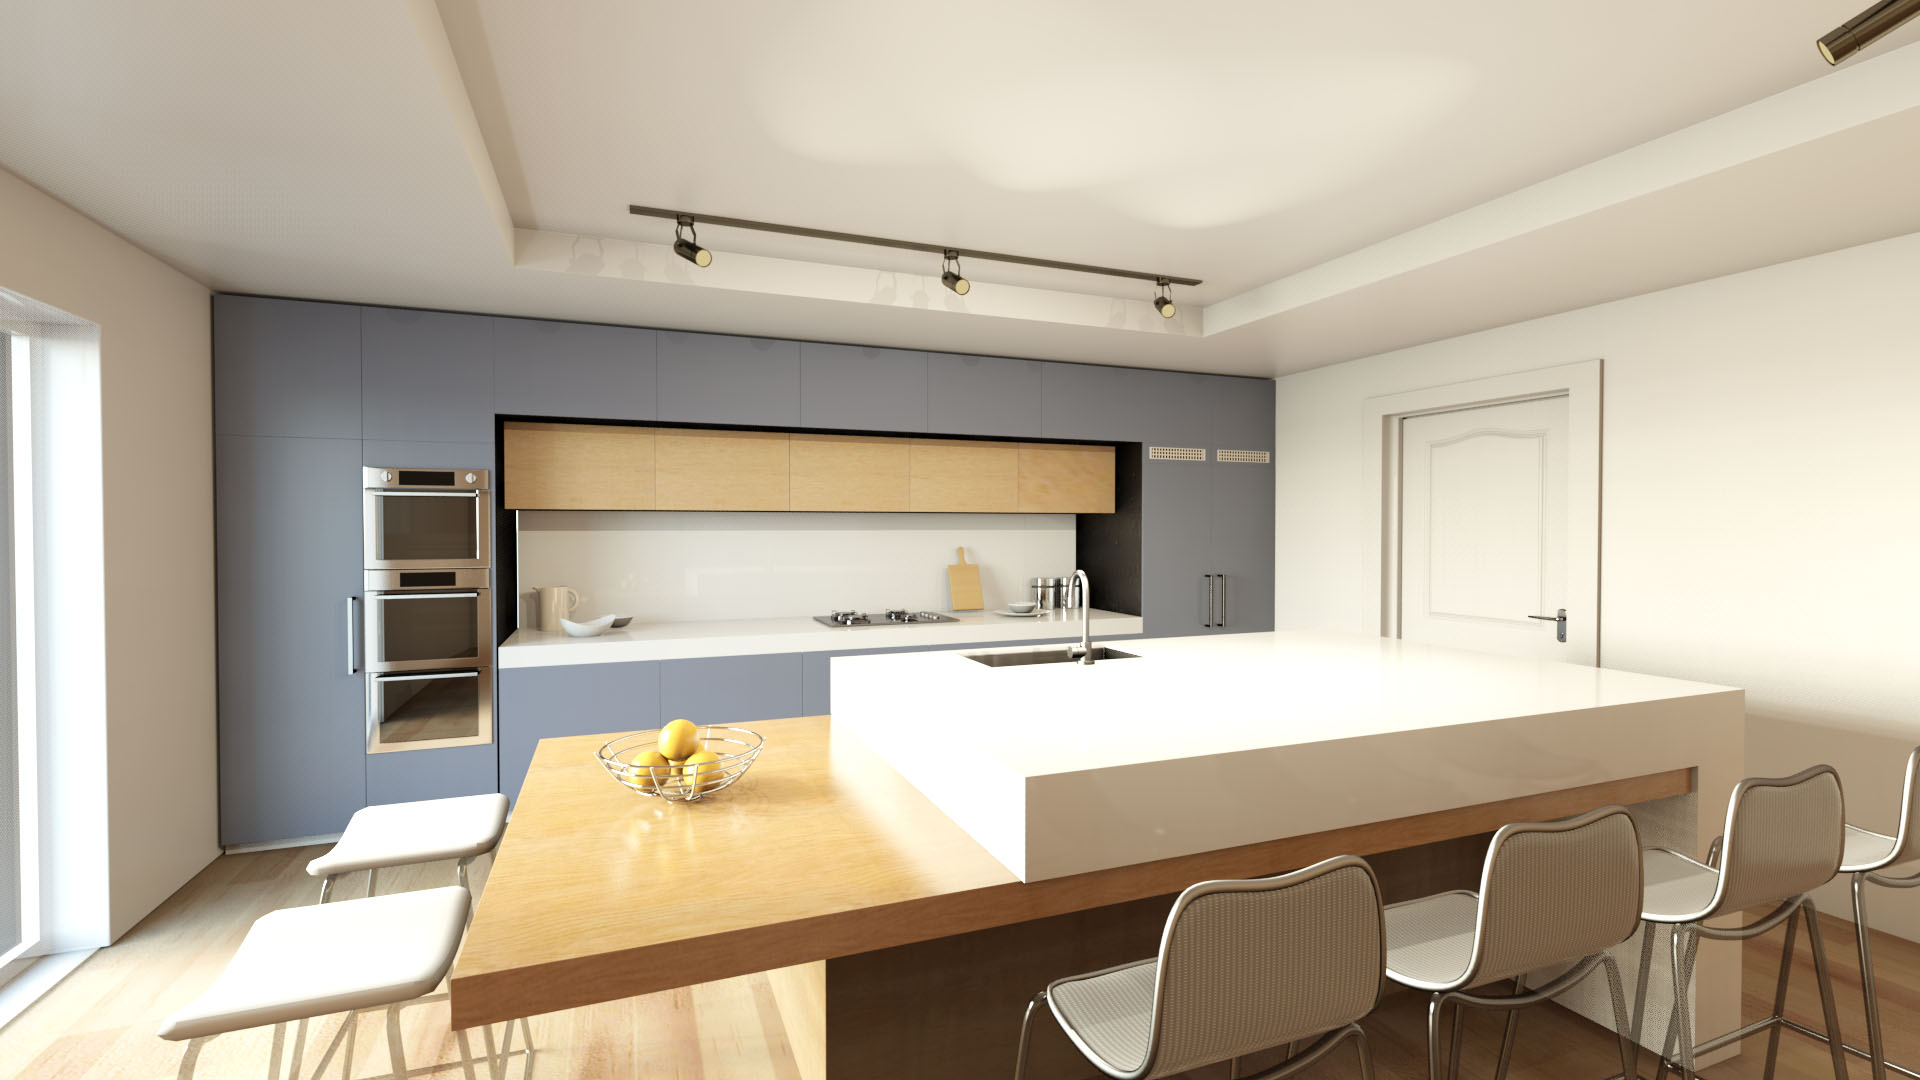 Kitchen Interior design